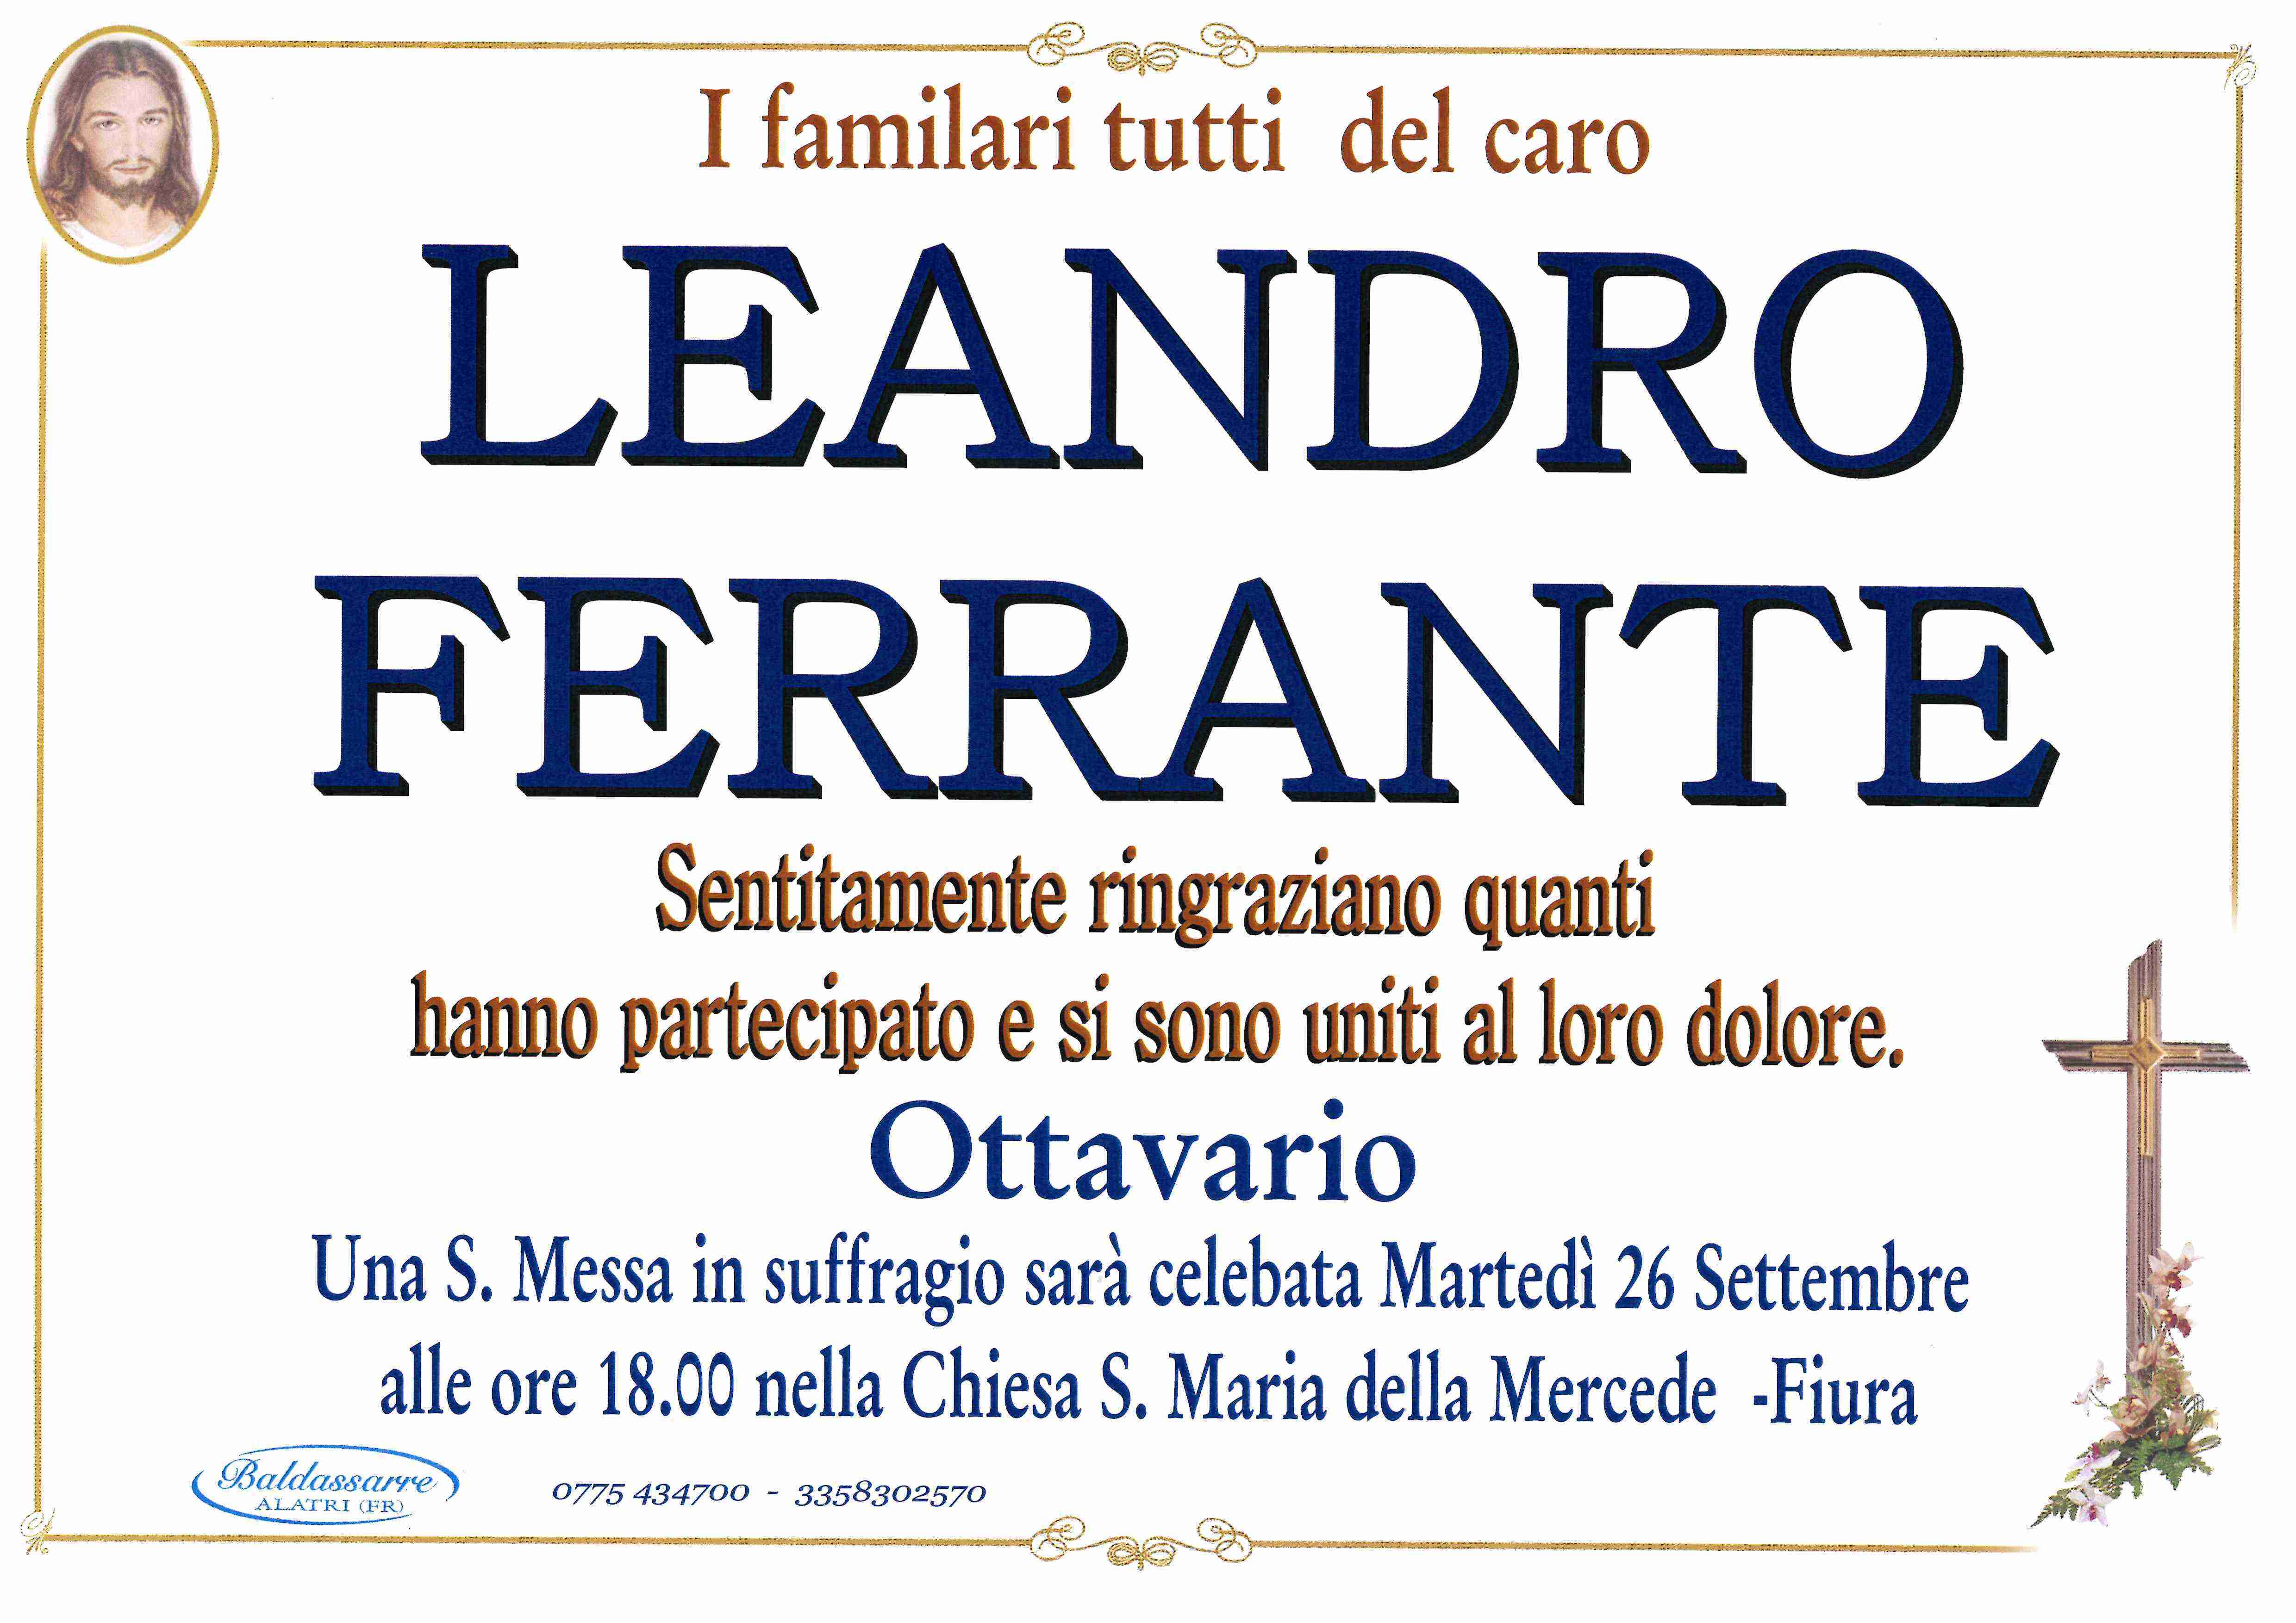 Leandro  Ferrante